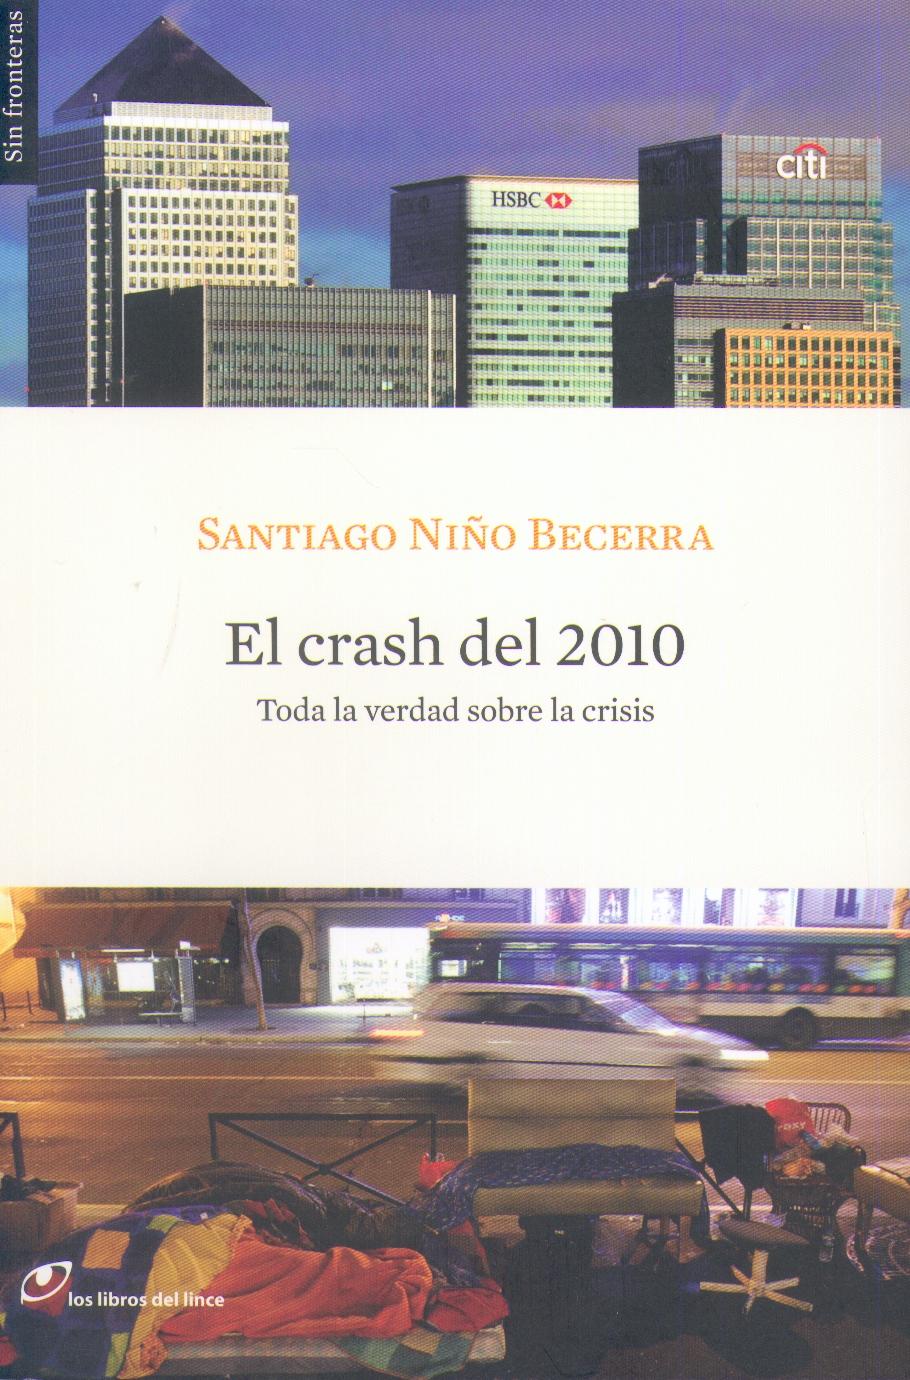 El Crash del 2010 "Toda la Verdad sobre la Crisis". Toda la Verdad sobre la Crisis